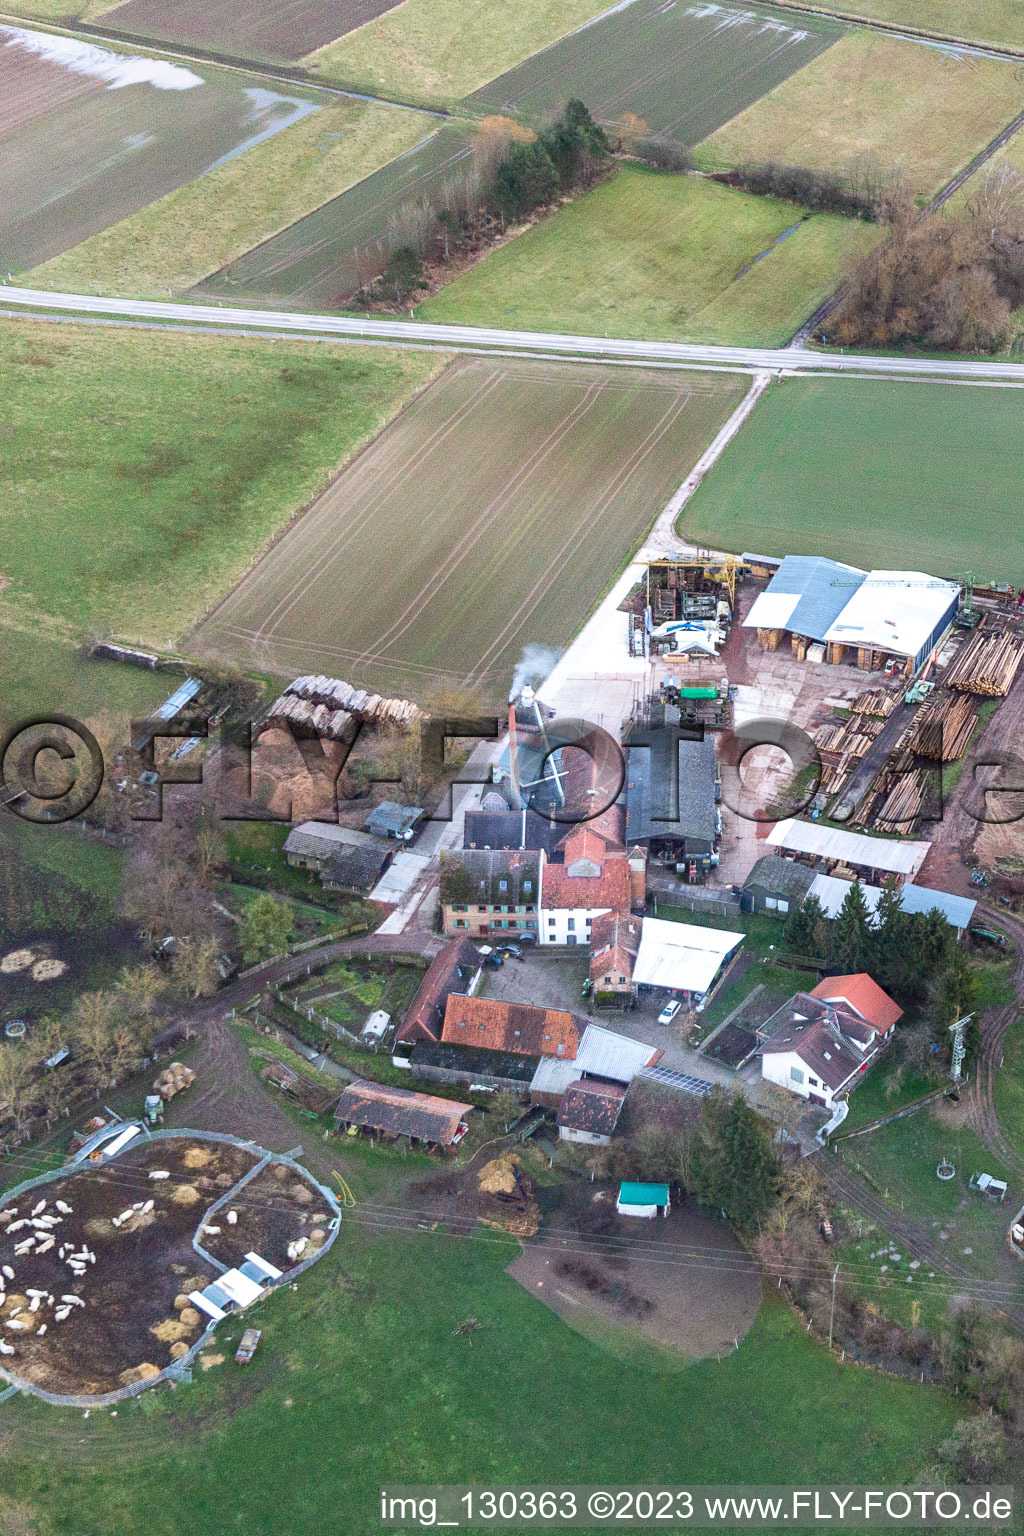 Luftbild von Holzwerk Orth an der Schaidter Mühle in Wörth am Rhein im Bundesland Rheinland-Pfalz, Deutschland